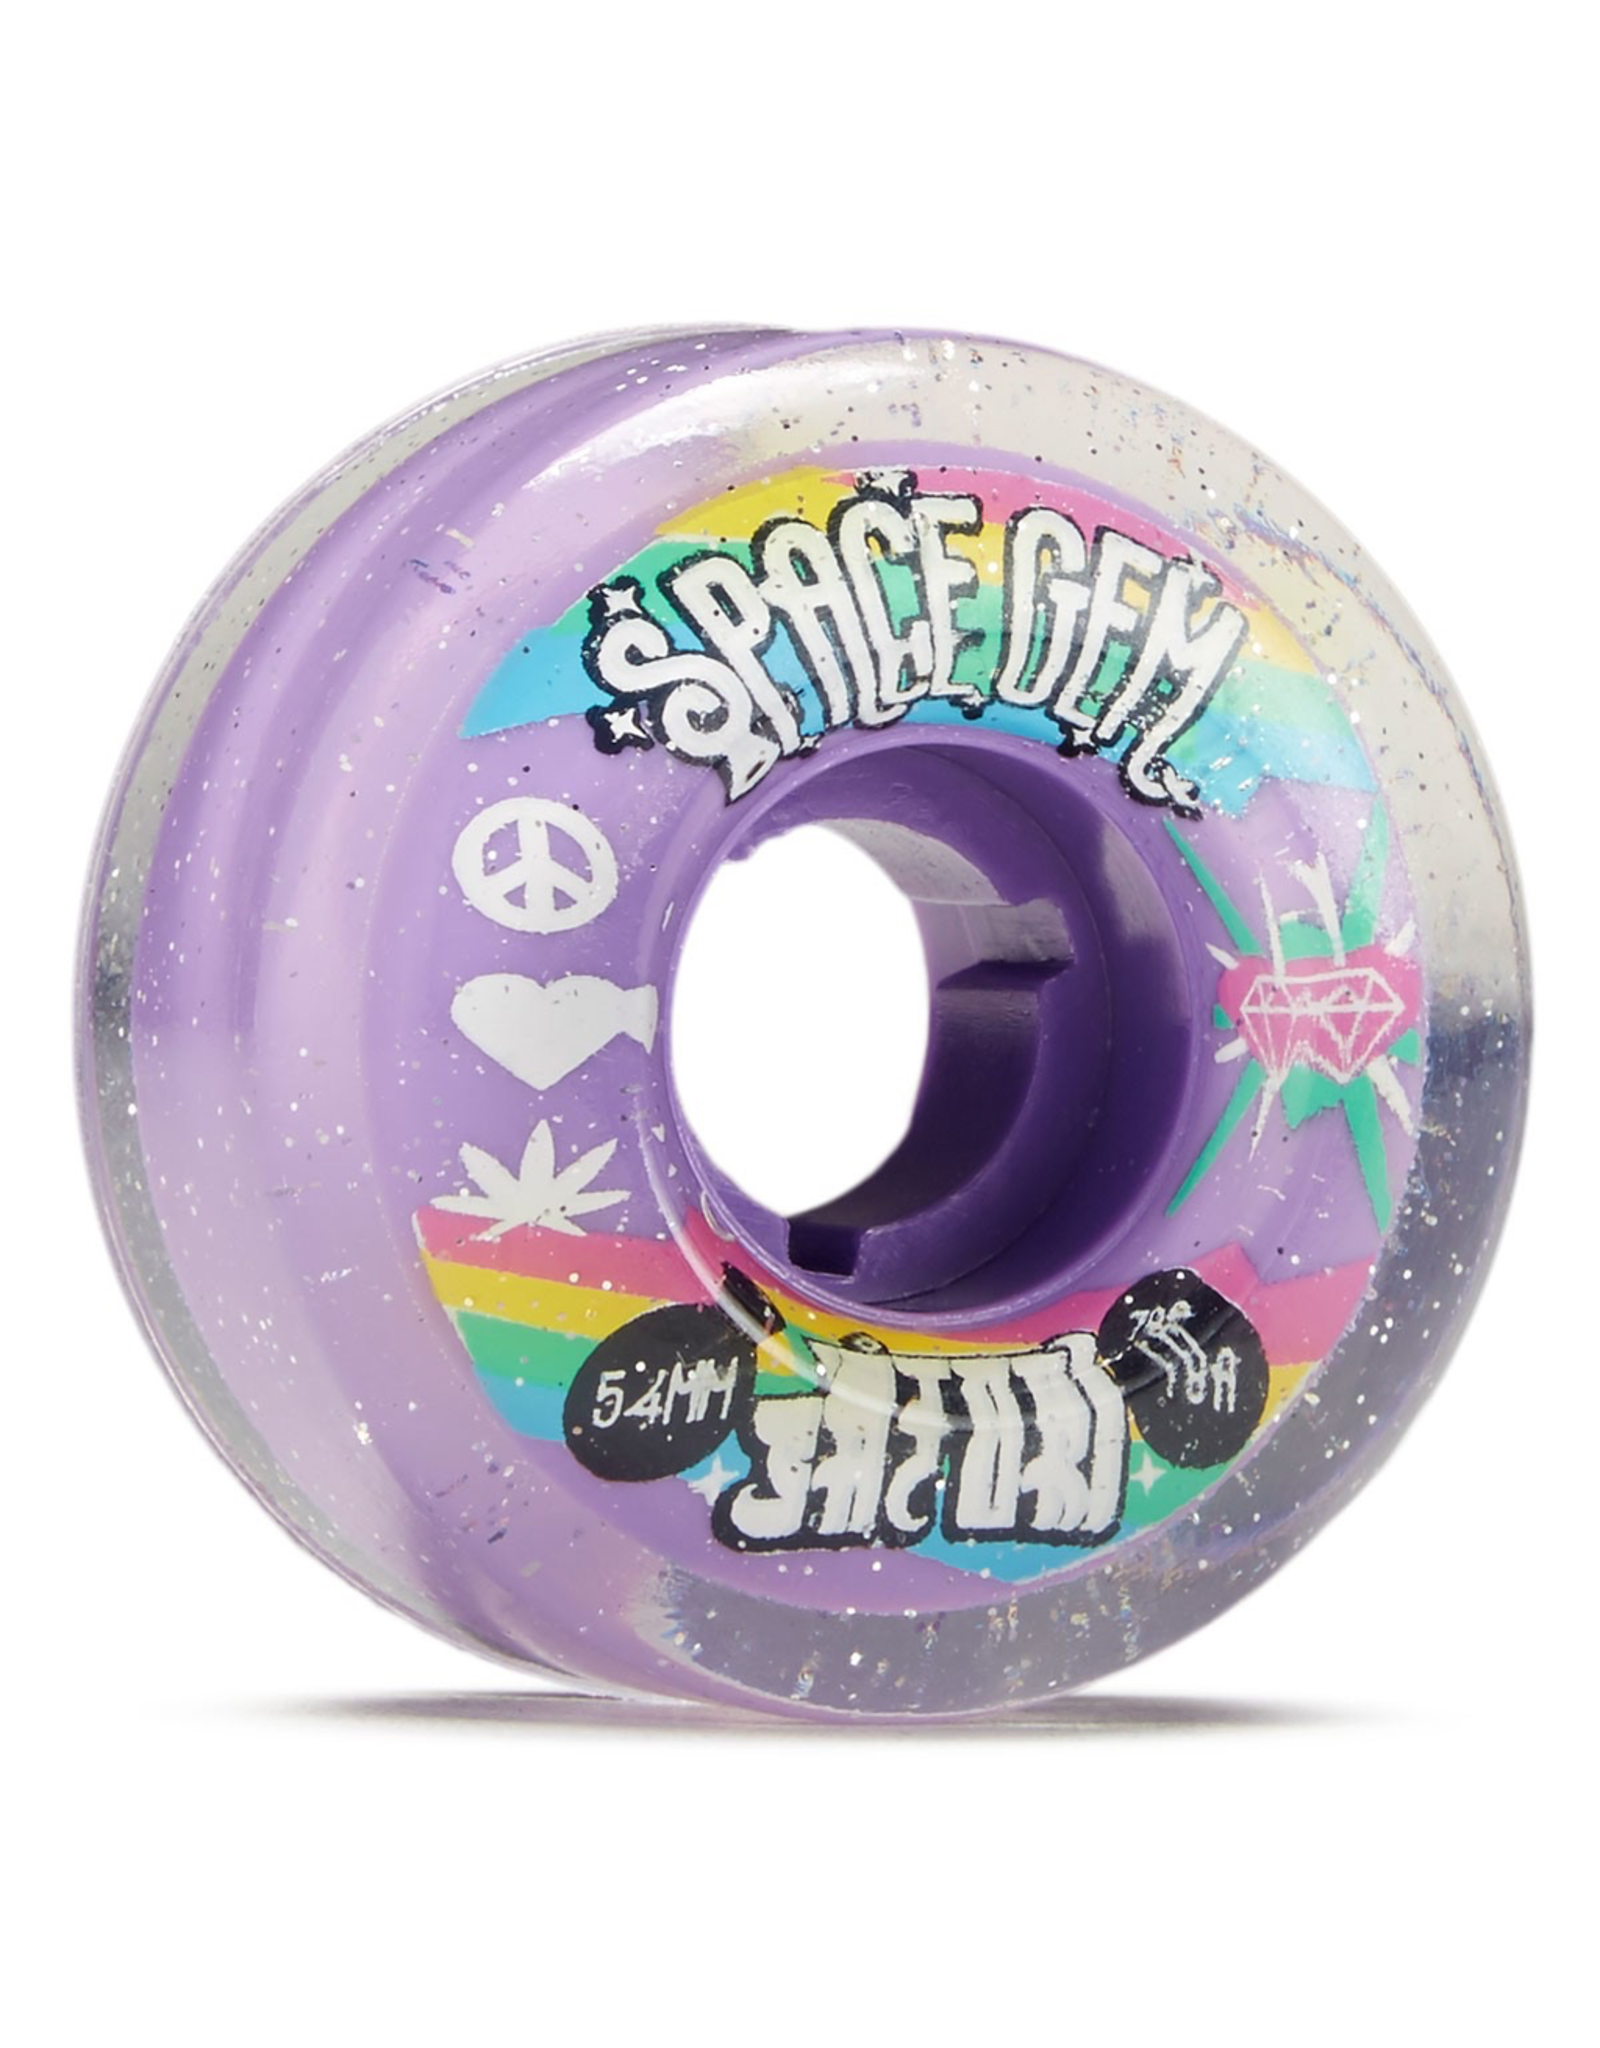 SATORI Satori Movement Space Gem Clear Skateboard Wheels - 54mm 78a (Set of 4)